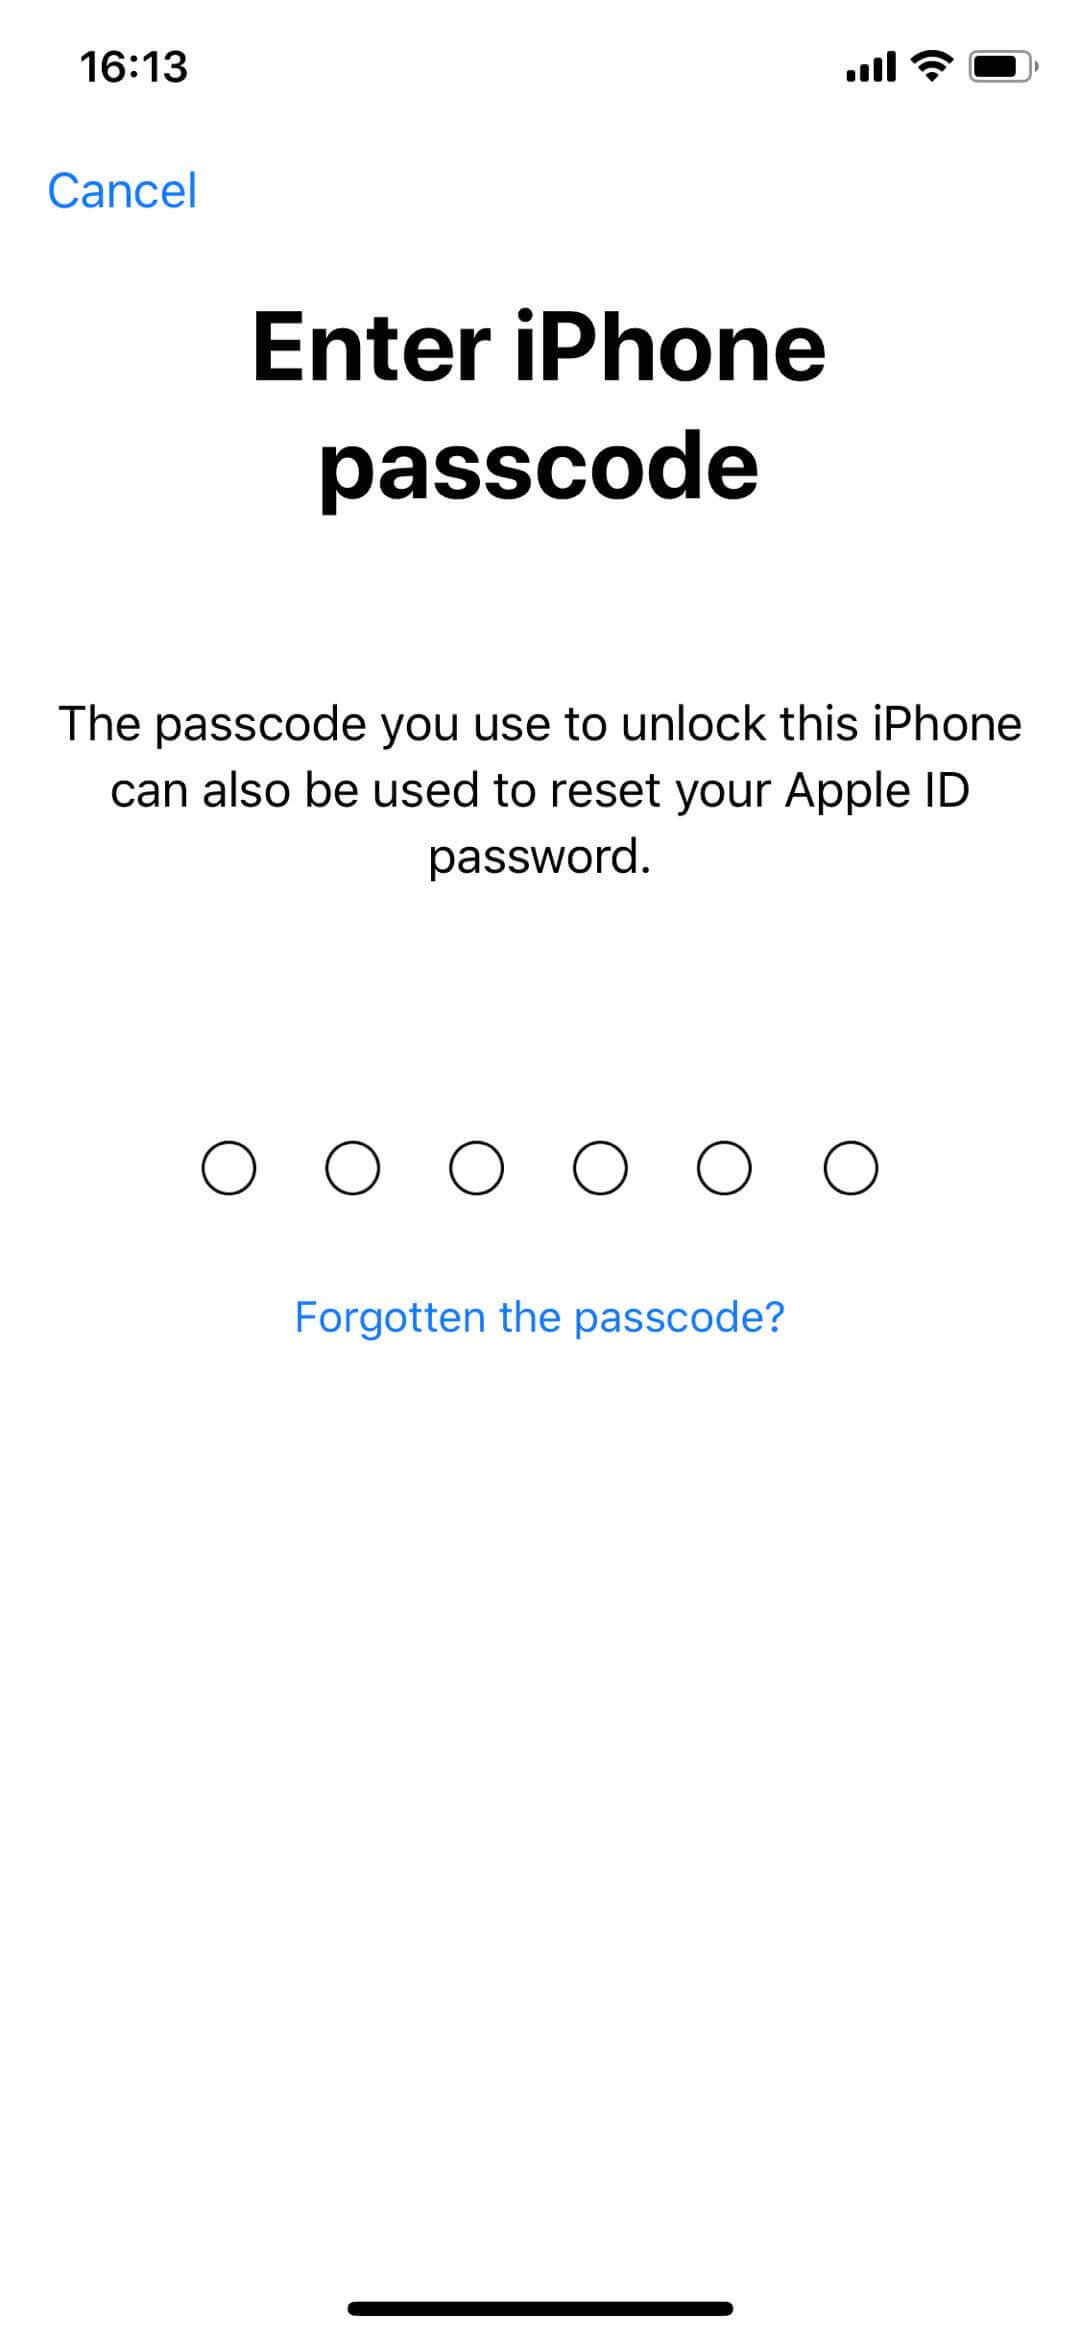 réinitialiser le mot de passe Apple ID